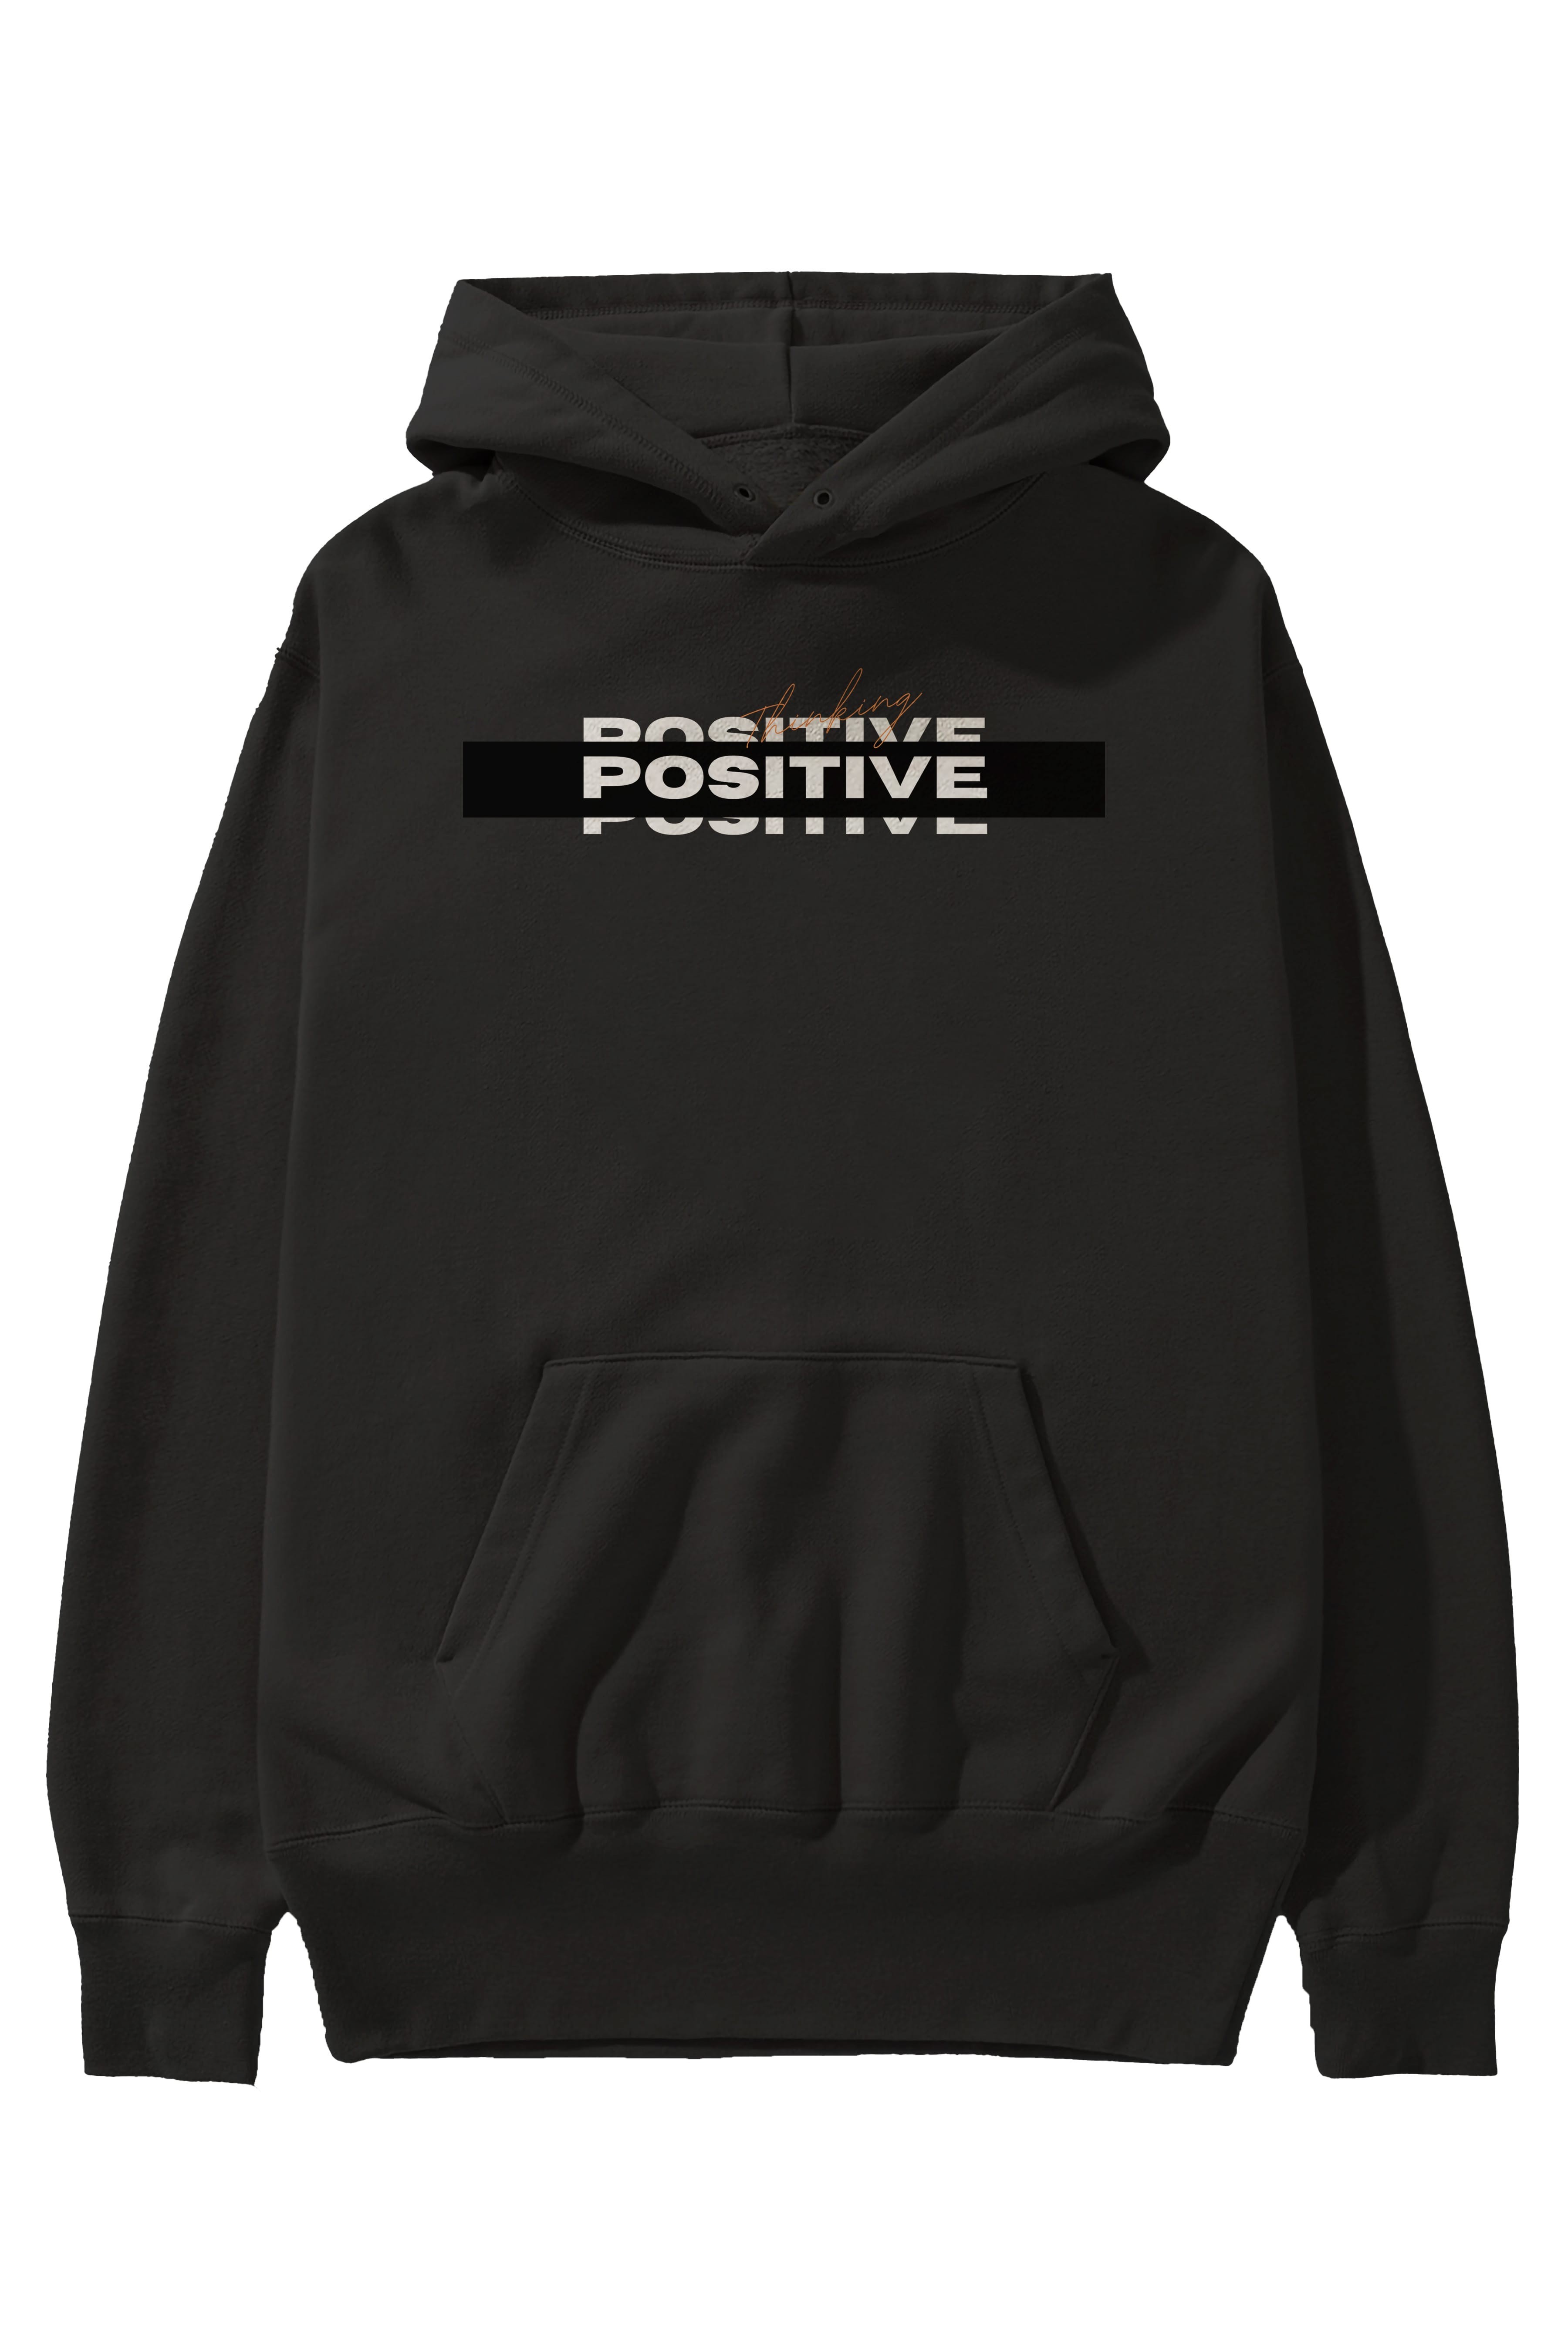 Positive Thinking Ön Baskılı Oversize Hoodie Kapüşonlu Sweatshirt Erkek Kadın Unisex